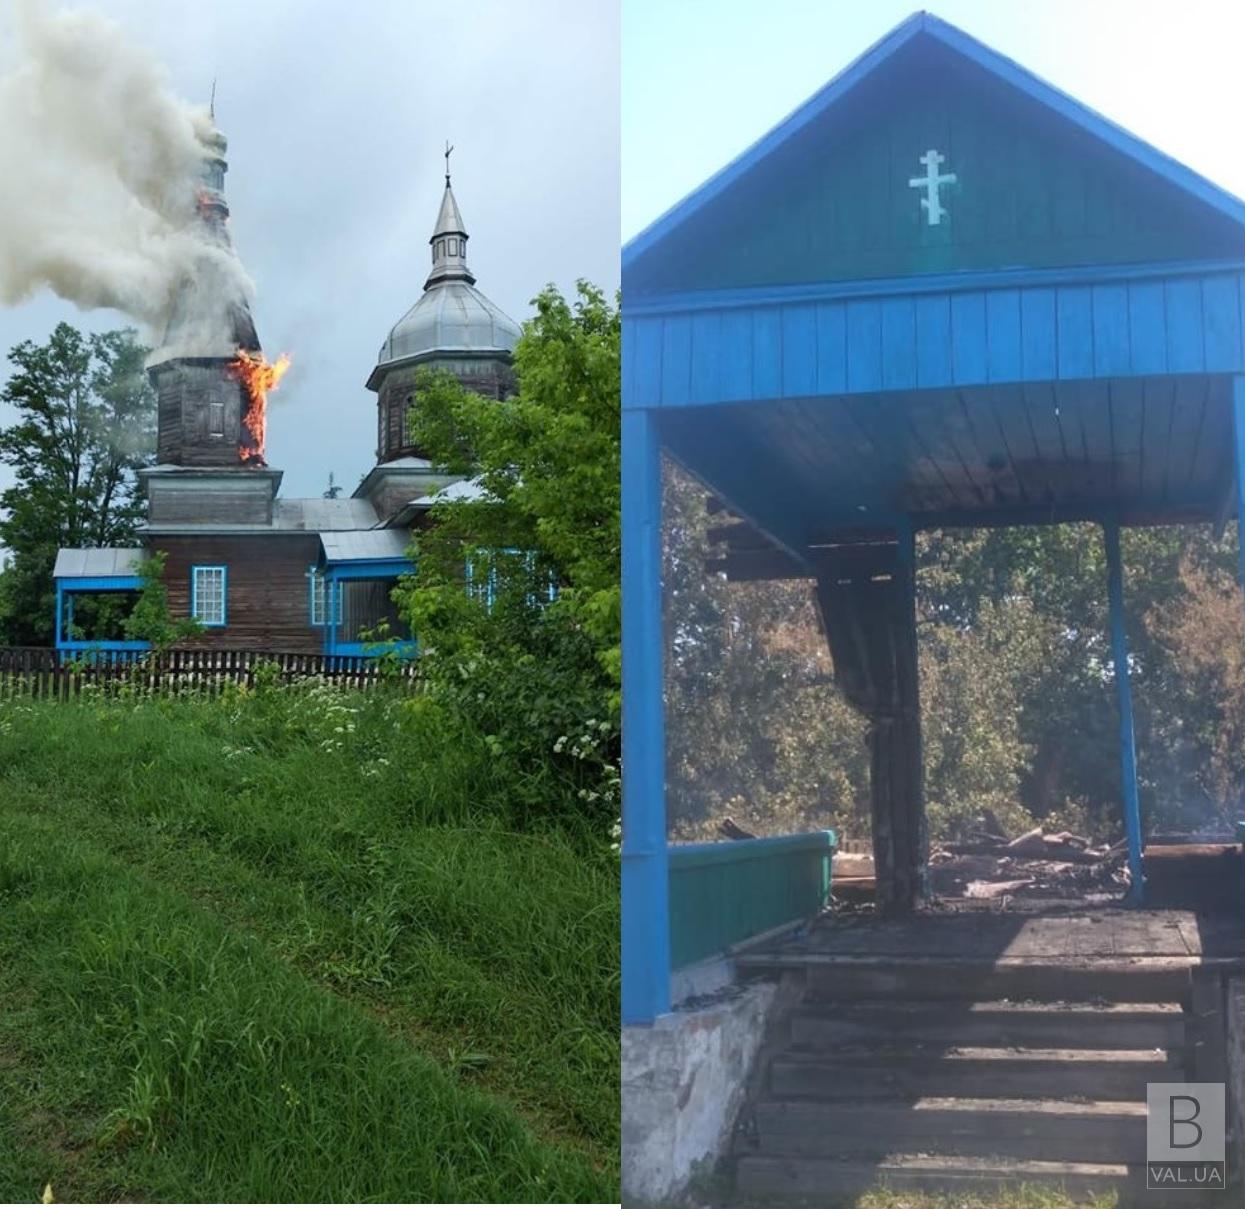 Выгорела дотла: появились фото церкви, которую уничтожила молния. ФОТО